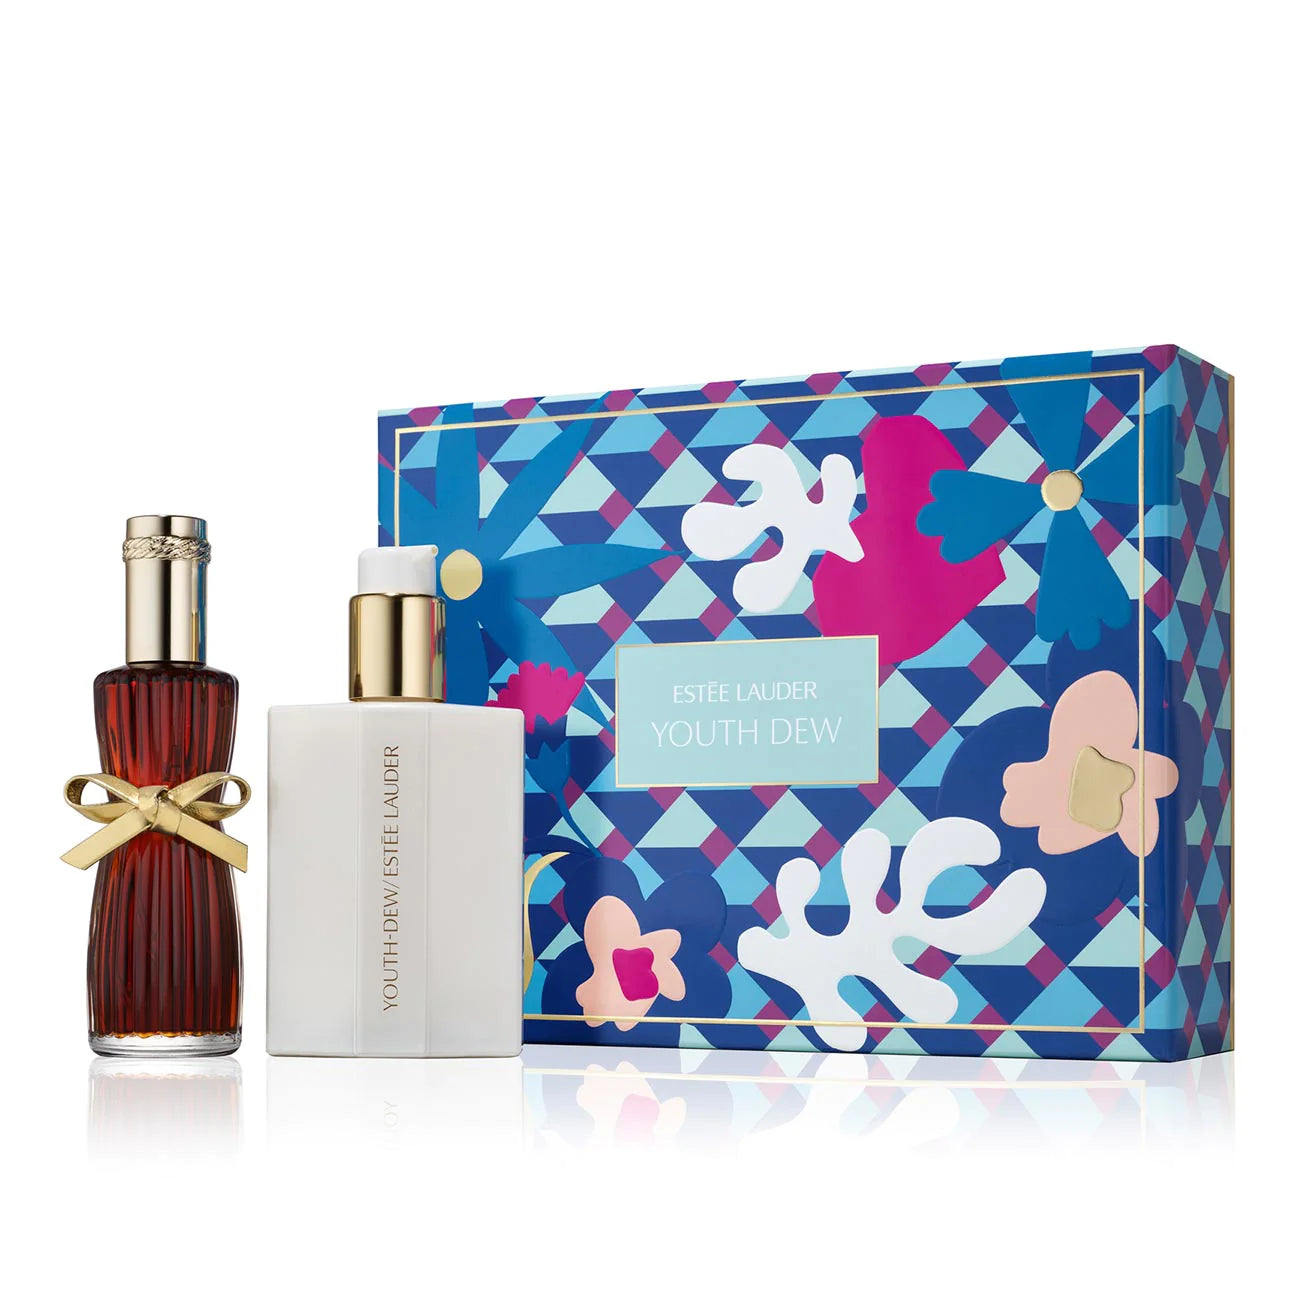 Estee Lauder Youth Dew Parfum Spray + Lotion Indulgent Duo 2 Pieces Gift Set - MazenOnline